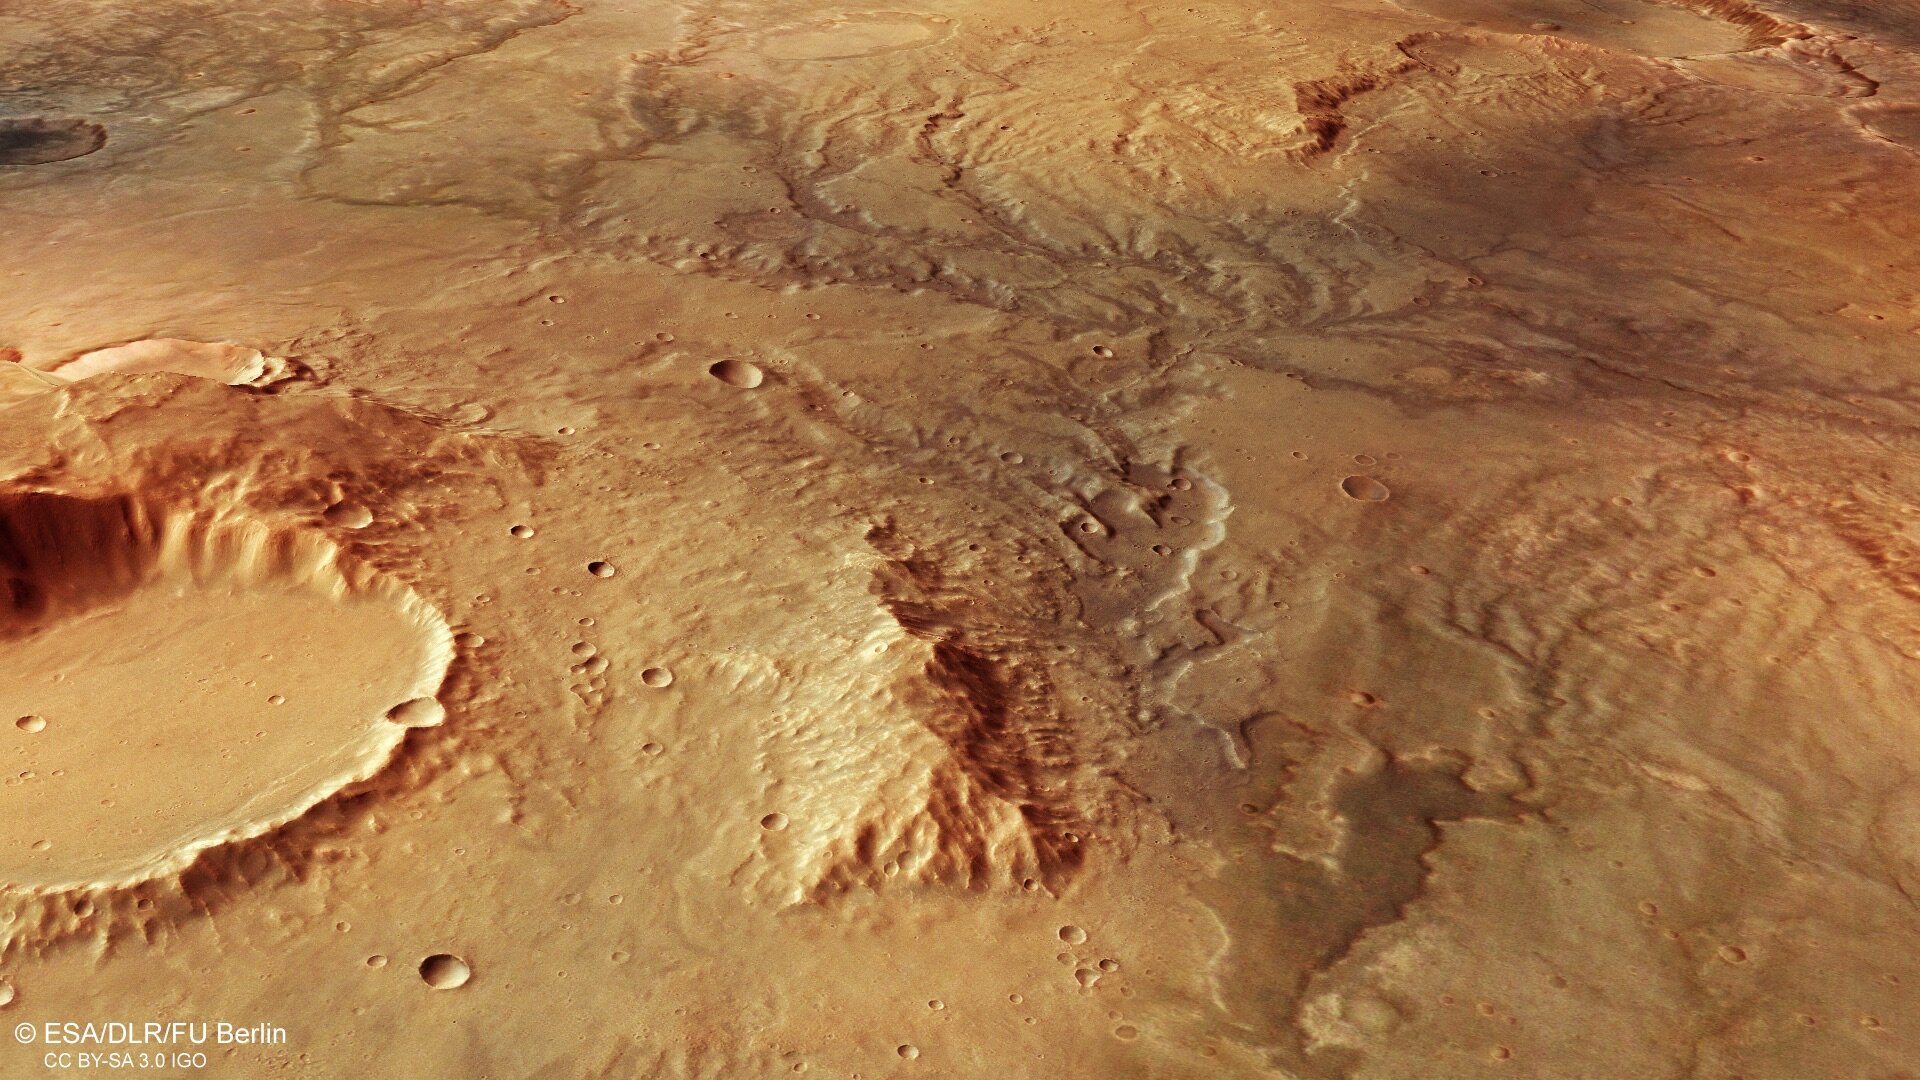 Vista en perspectiva de una antigua red de valles fluviales en Marte